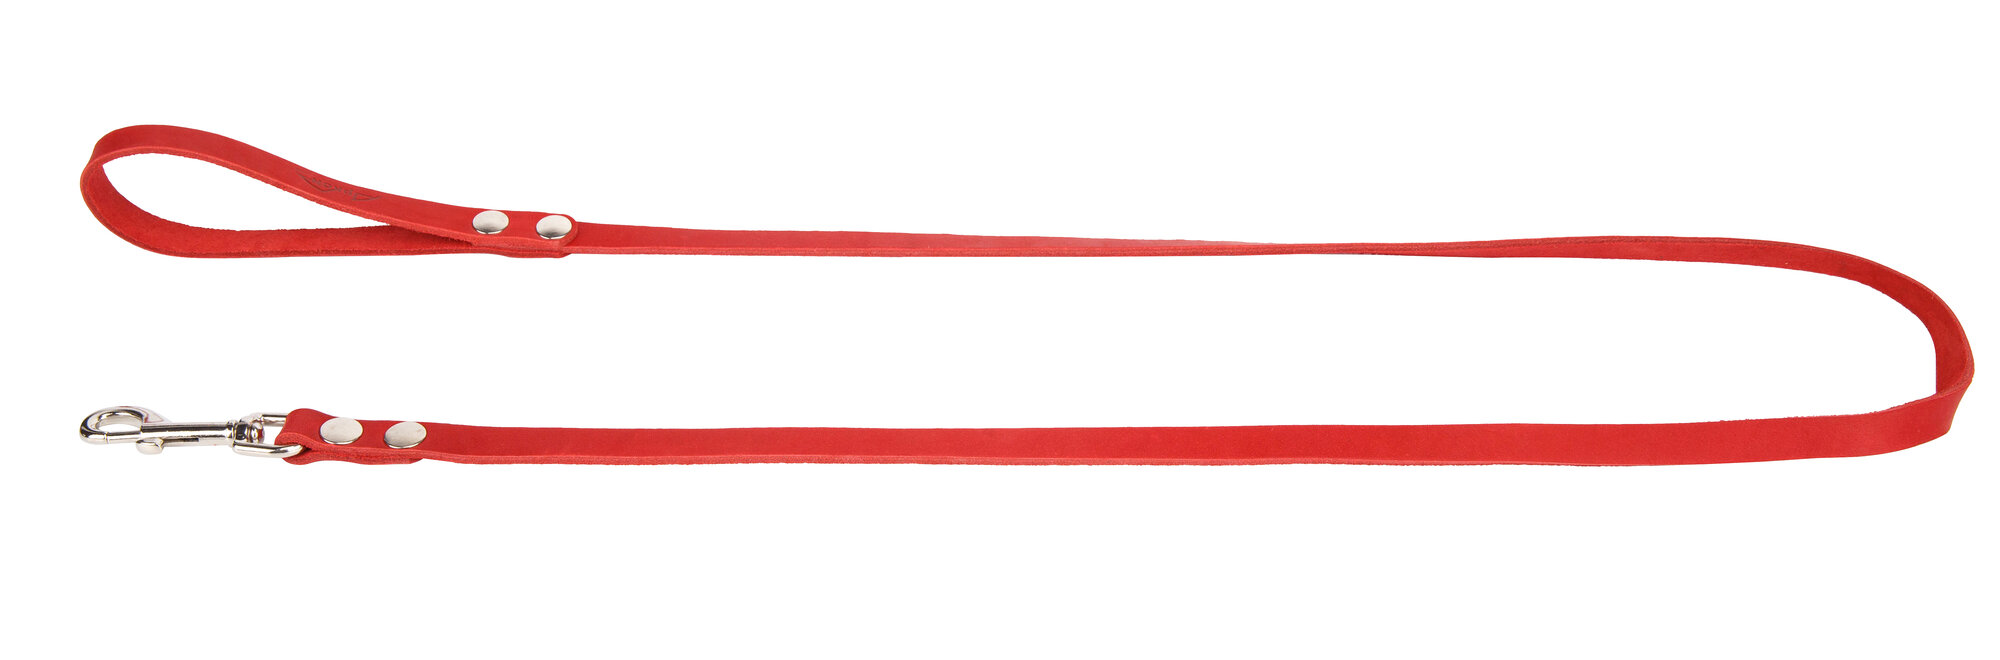 Поводок аркон кожаный 1.4м х 14мм однослойный, цвет красный